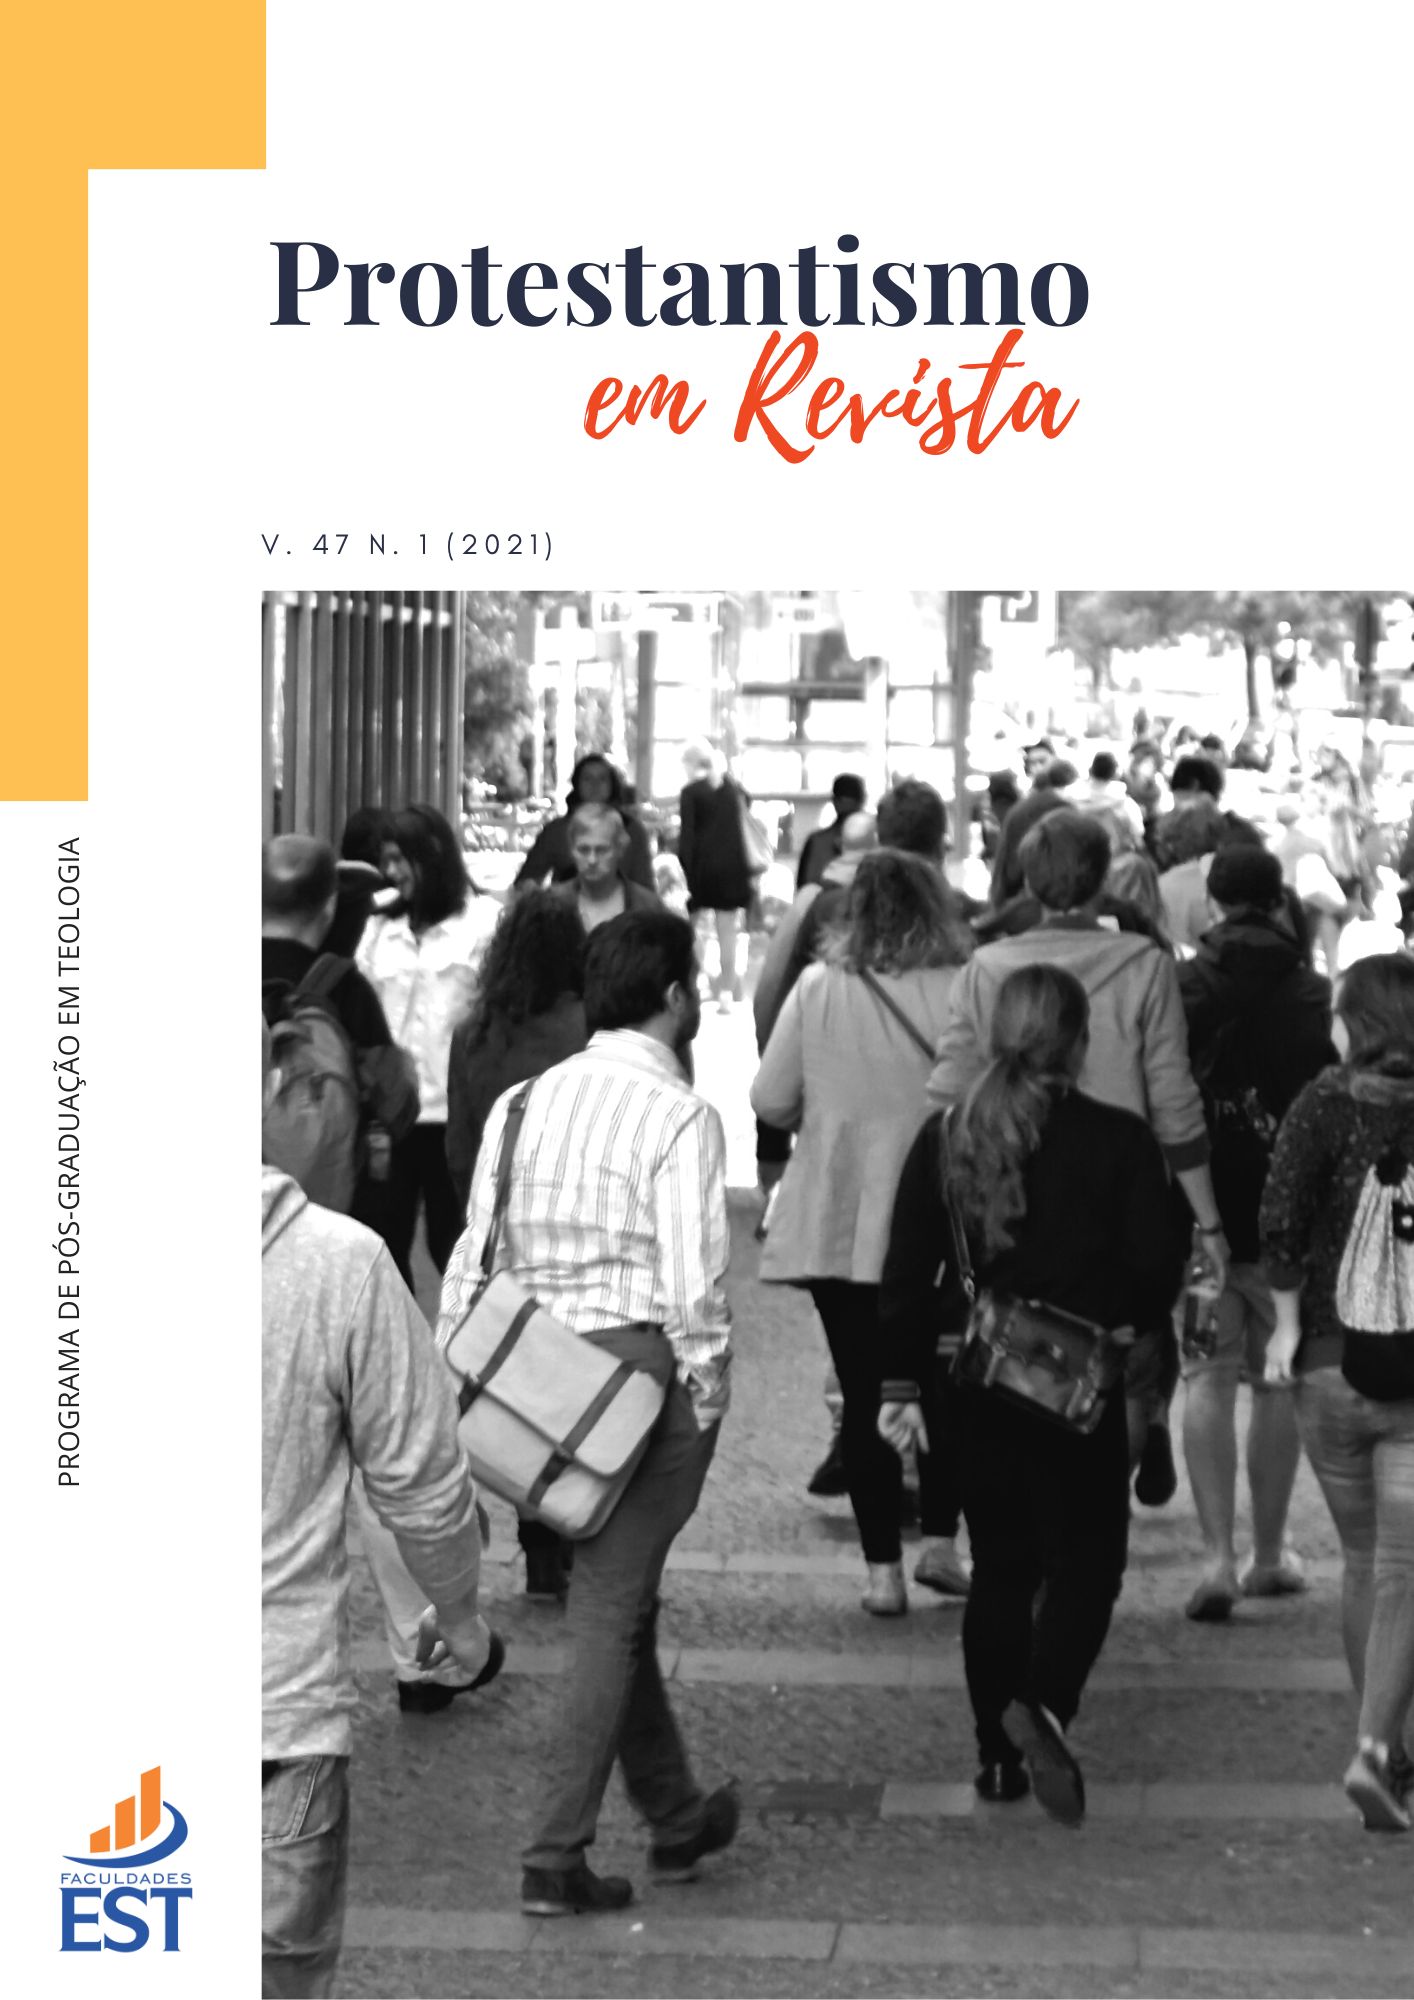 					View Vol. 47 No. 01 (2021): Identidades e Sociabilidades Religiosas no Brasil Atual: Formas de Expressão e Crises de Paradigmas
				